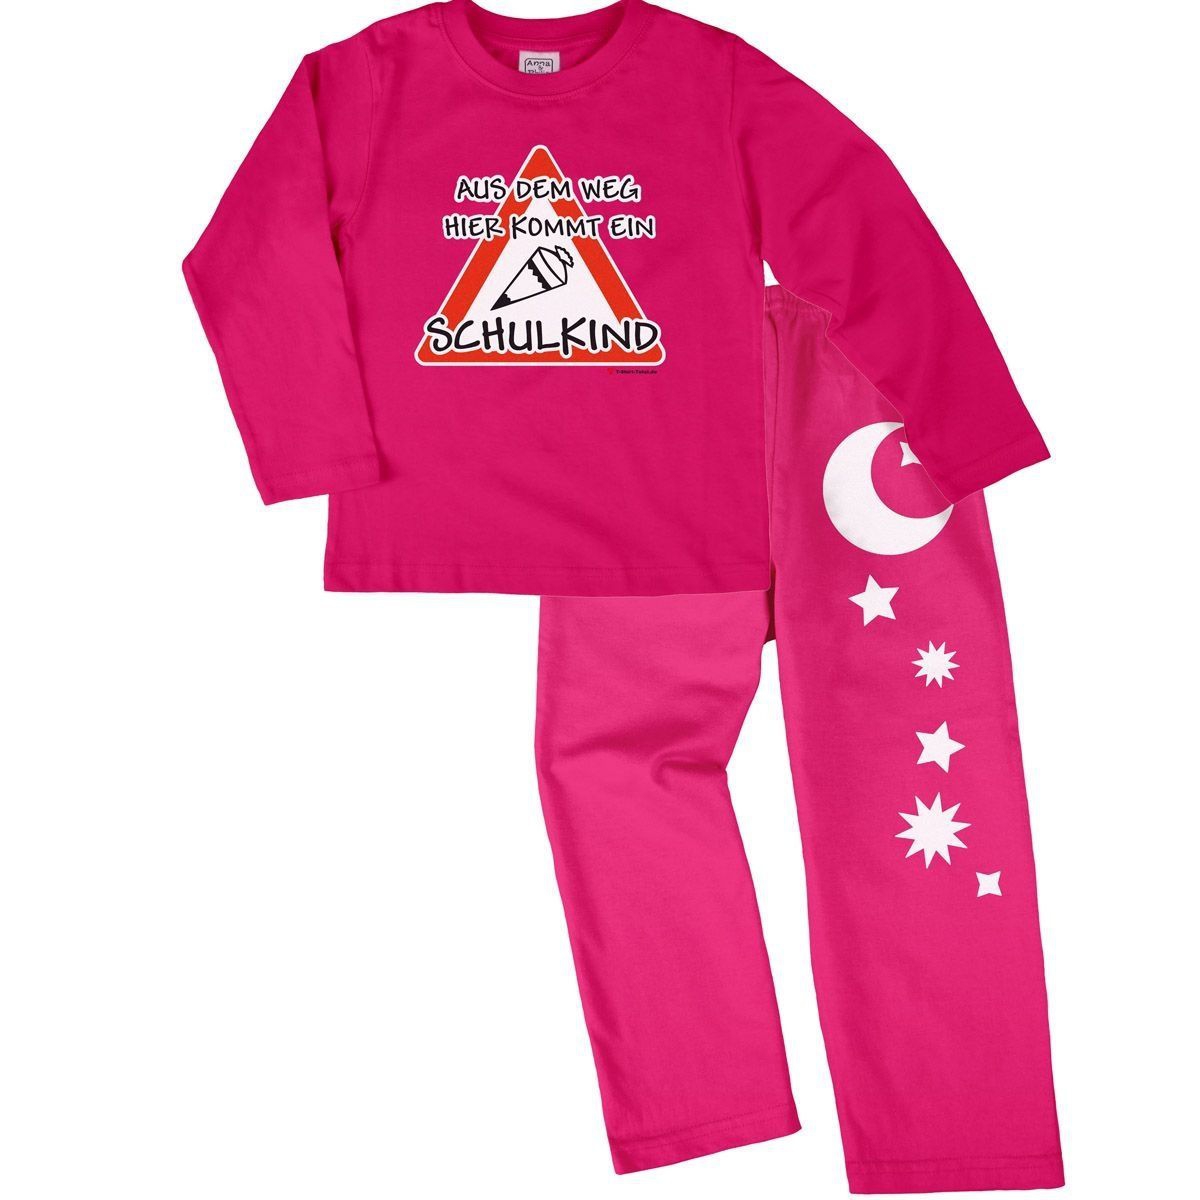 Kommt ein Schulkind Pyjama Set pink / pink 122 / 128